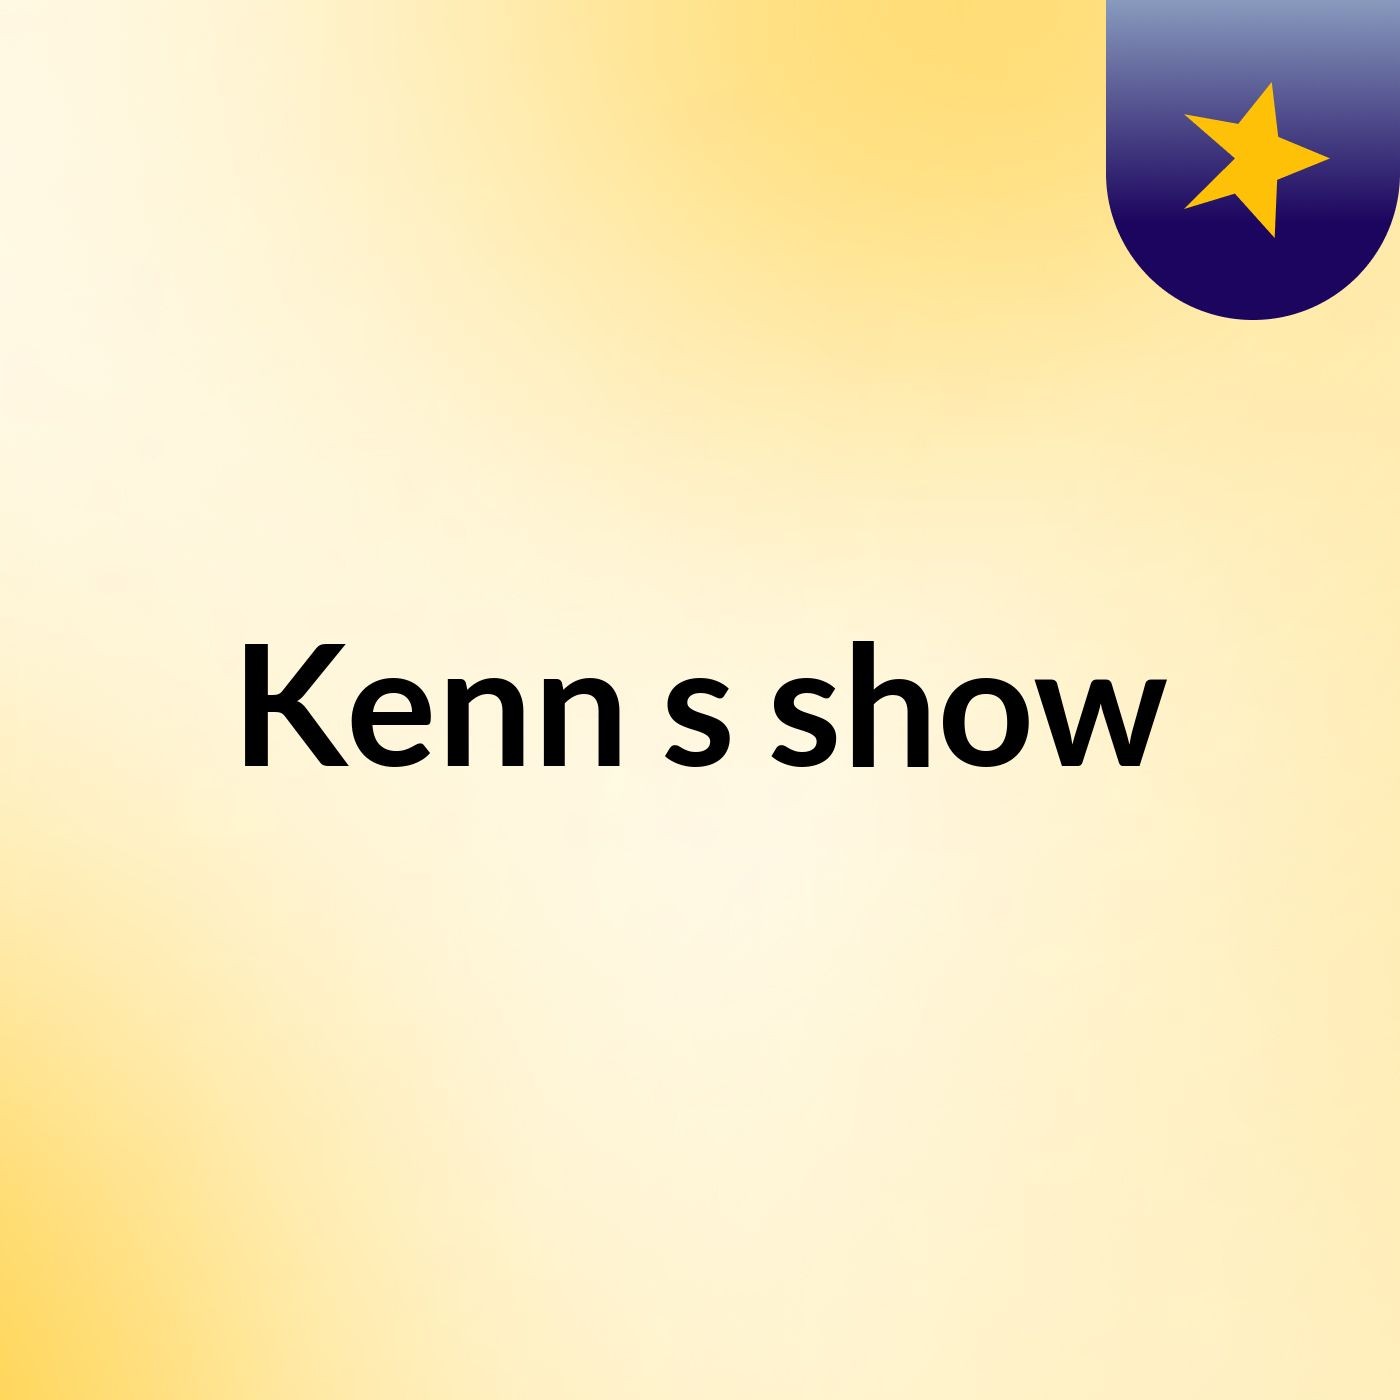 Kenn's show